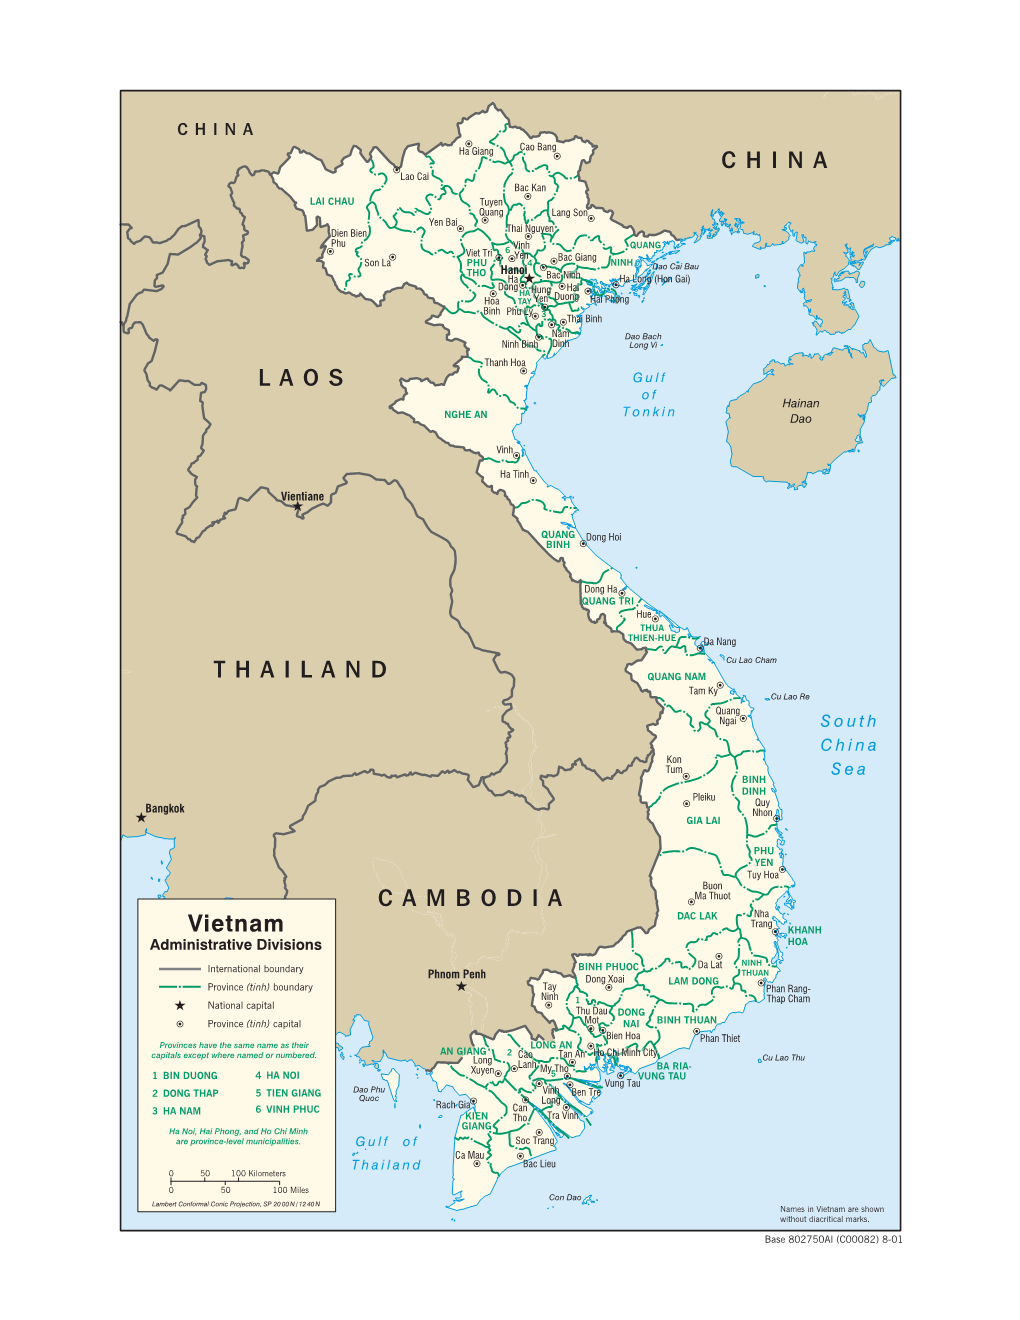 CAMBODIA THAILAND LAOS CHINA Vietnam